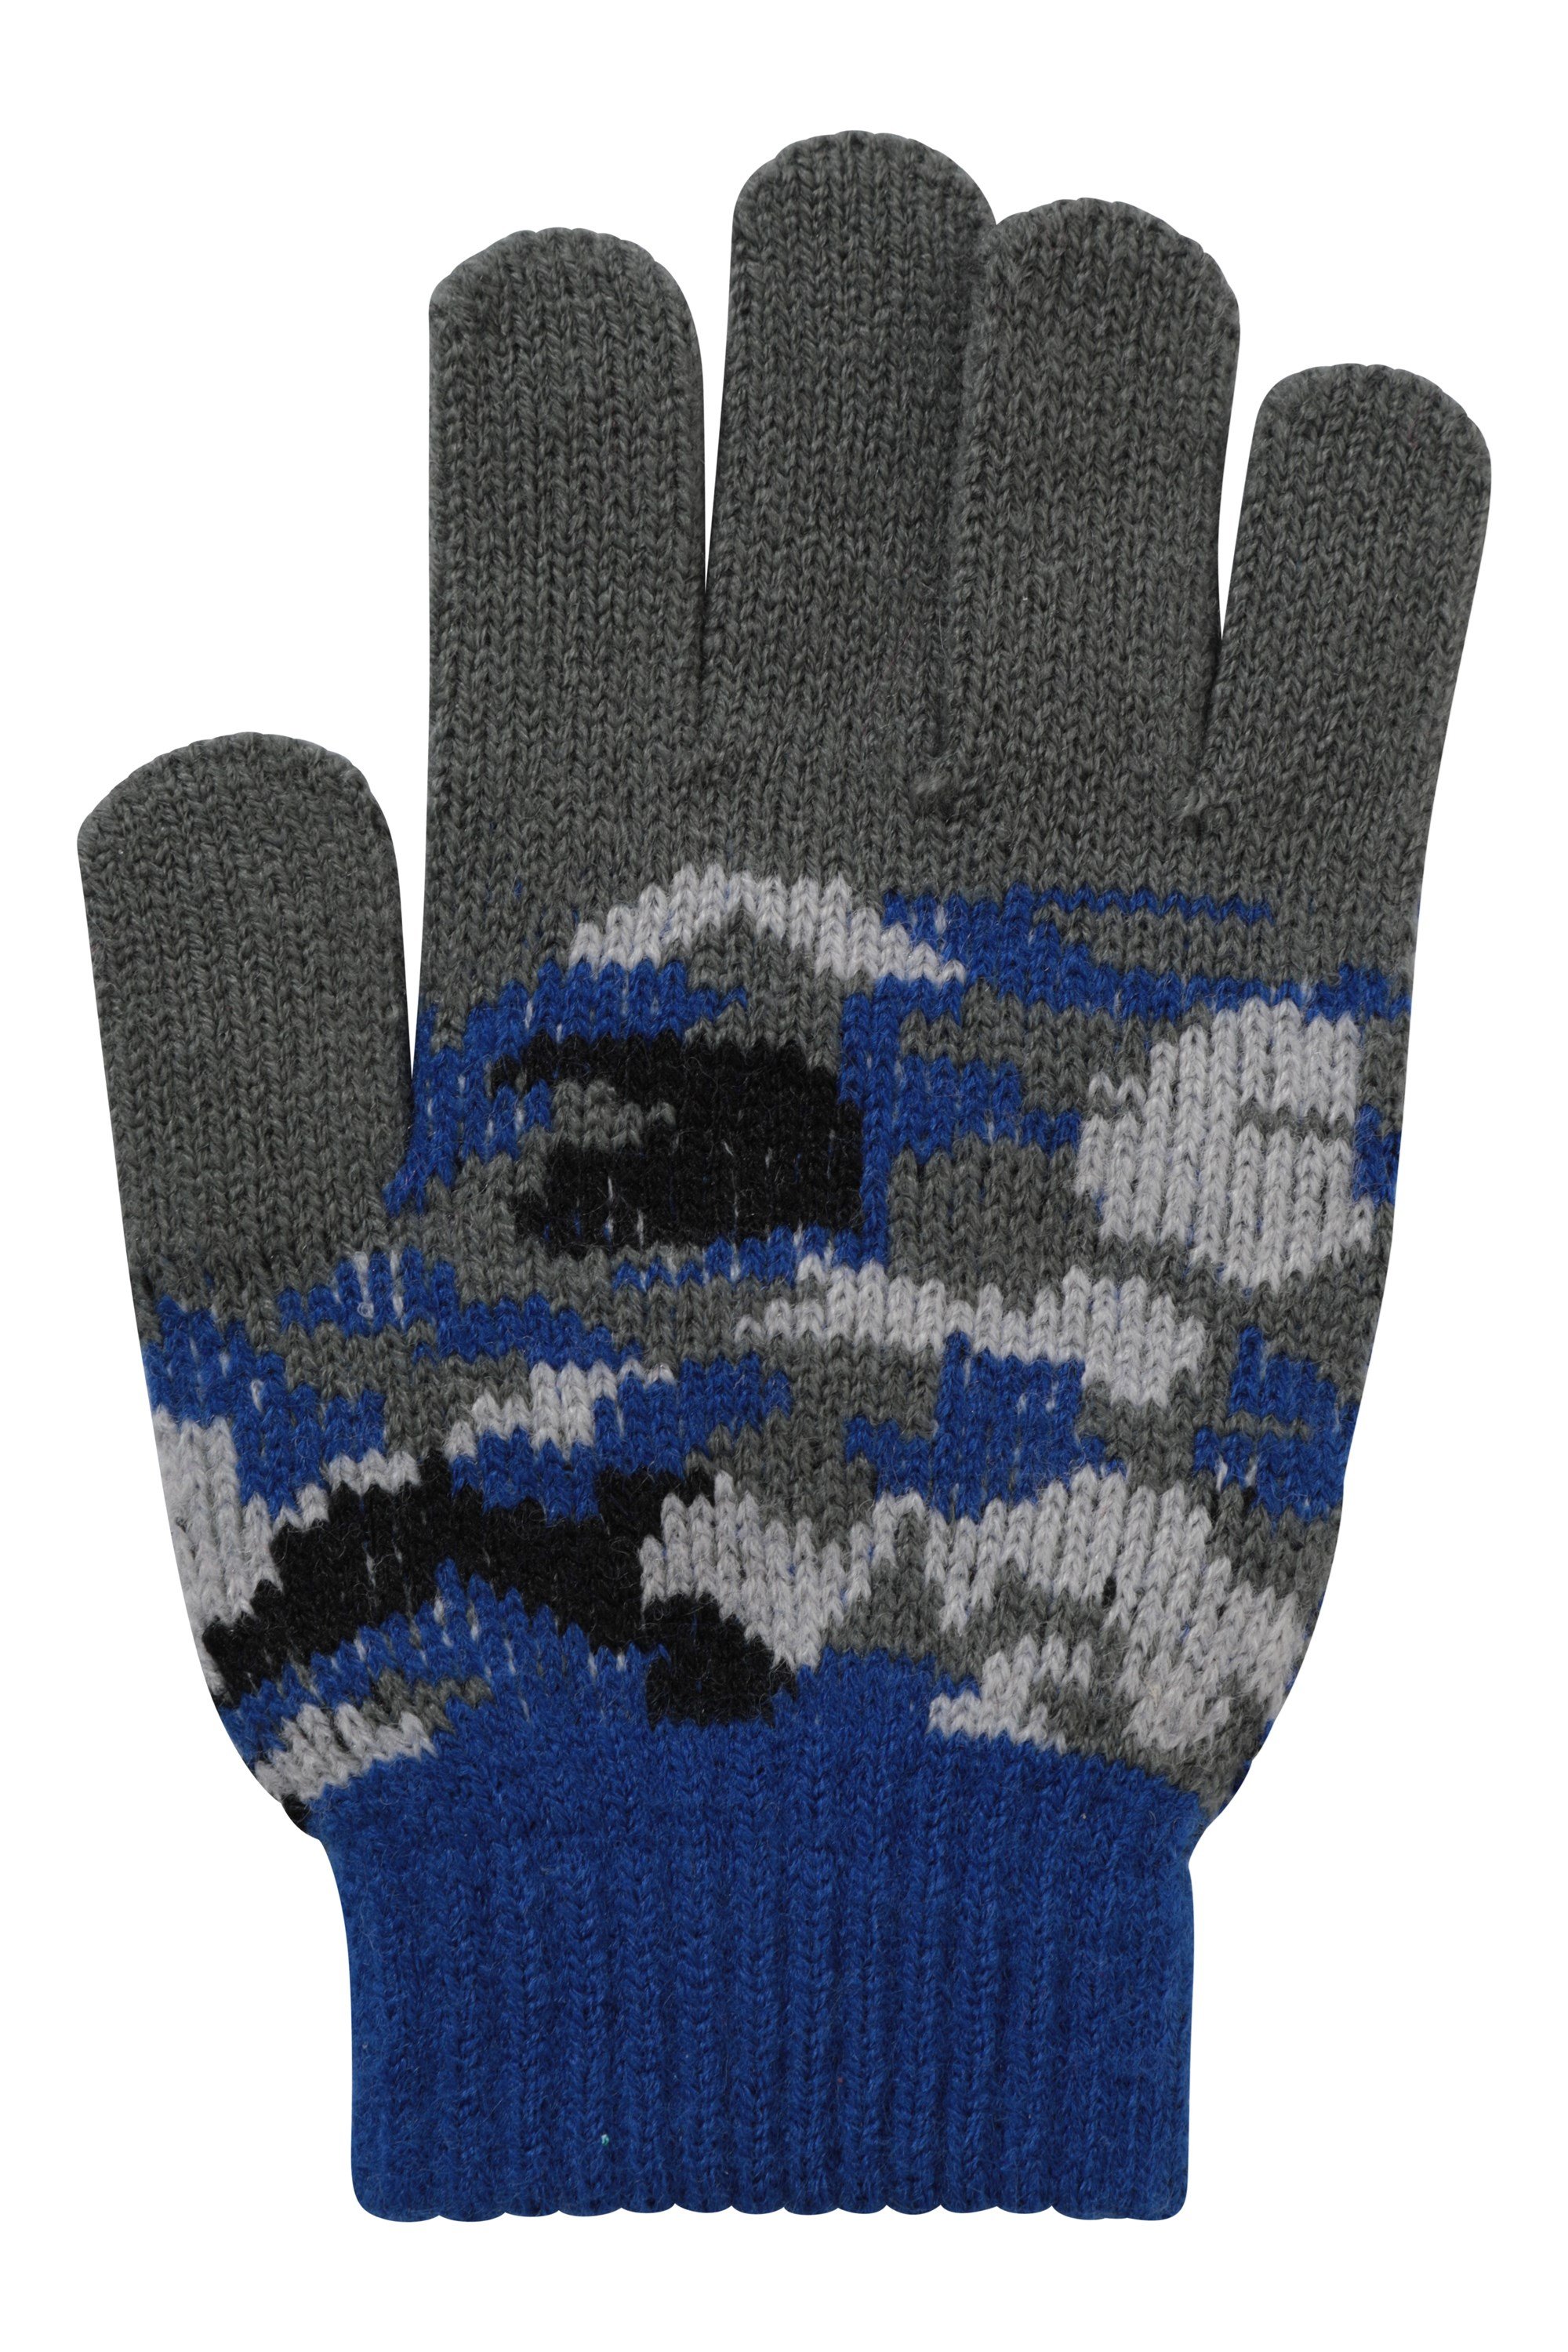 Premium Winter Hand Wrist Warmer Flip Cover Fingerless Gloves Mittens for Baby Girls and Boys Lyperkin Children Winter Gloves 